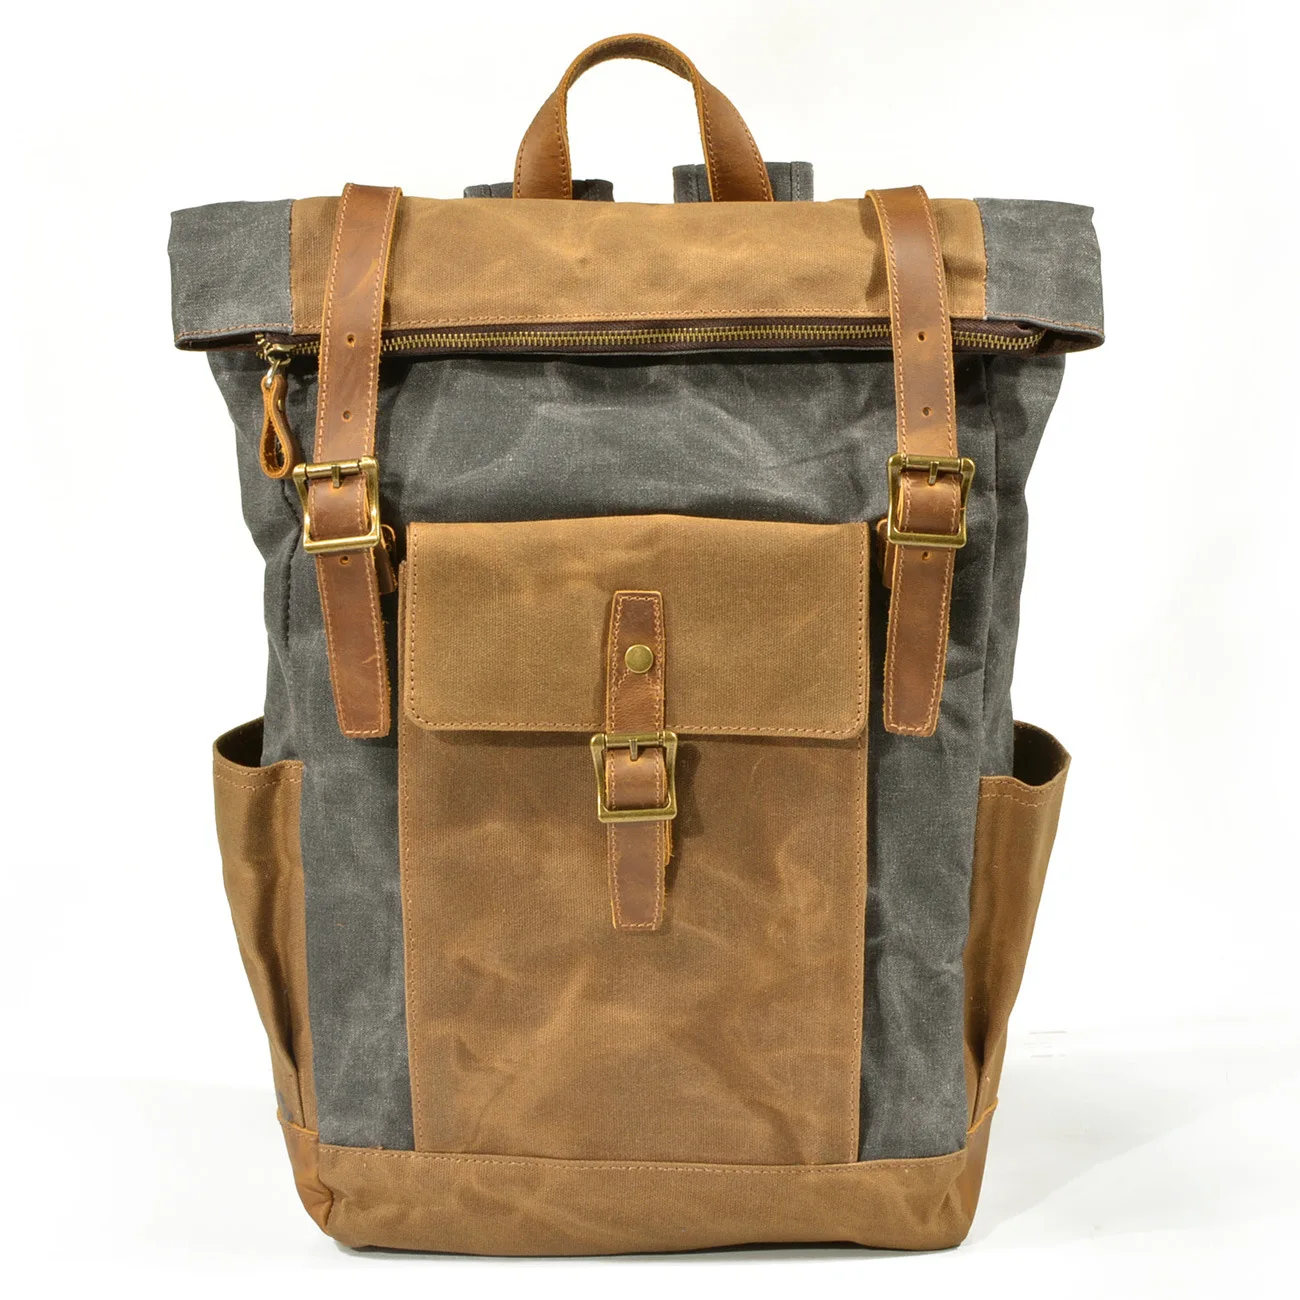 Muchuan масло воск ткань Рюкзак Новая сумка для отдыха в европейском стиле большой объем водонепроницаемый холст сумка - Цвет: Темно-серый